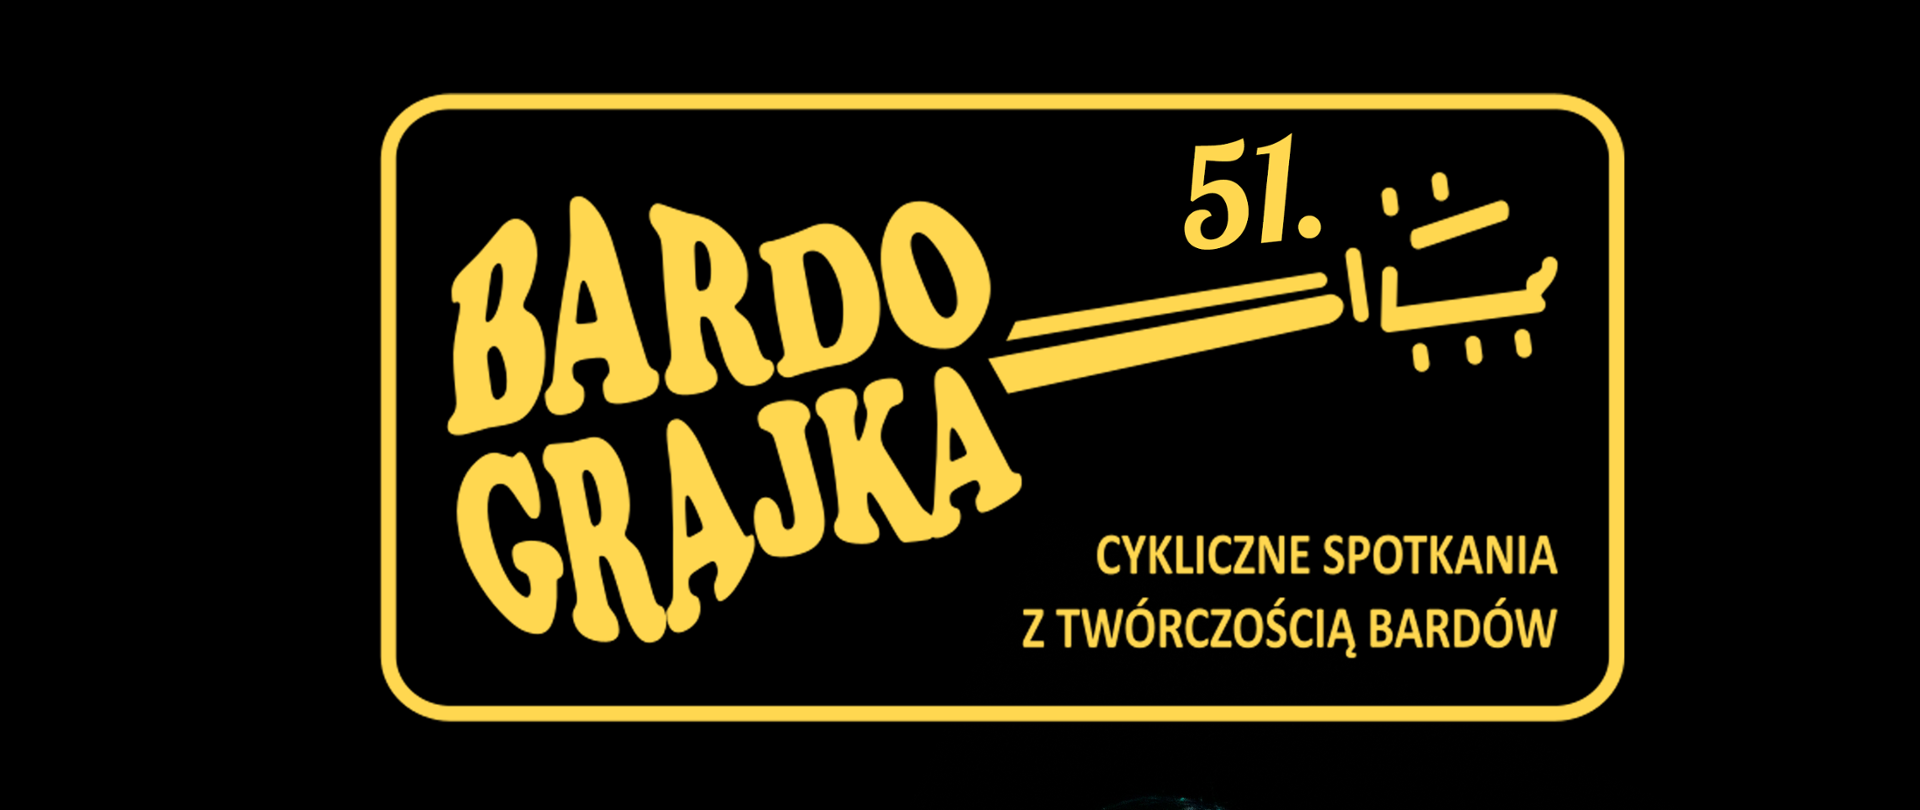 51. Bardograjka Cykliczne Spotkania z Twórczością Bardów. Żółty napis w kształcie gitary na czarnym tle.